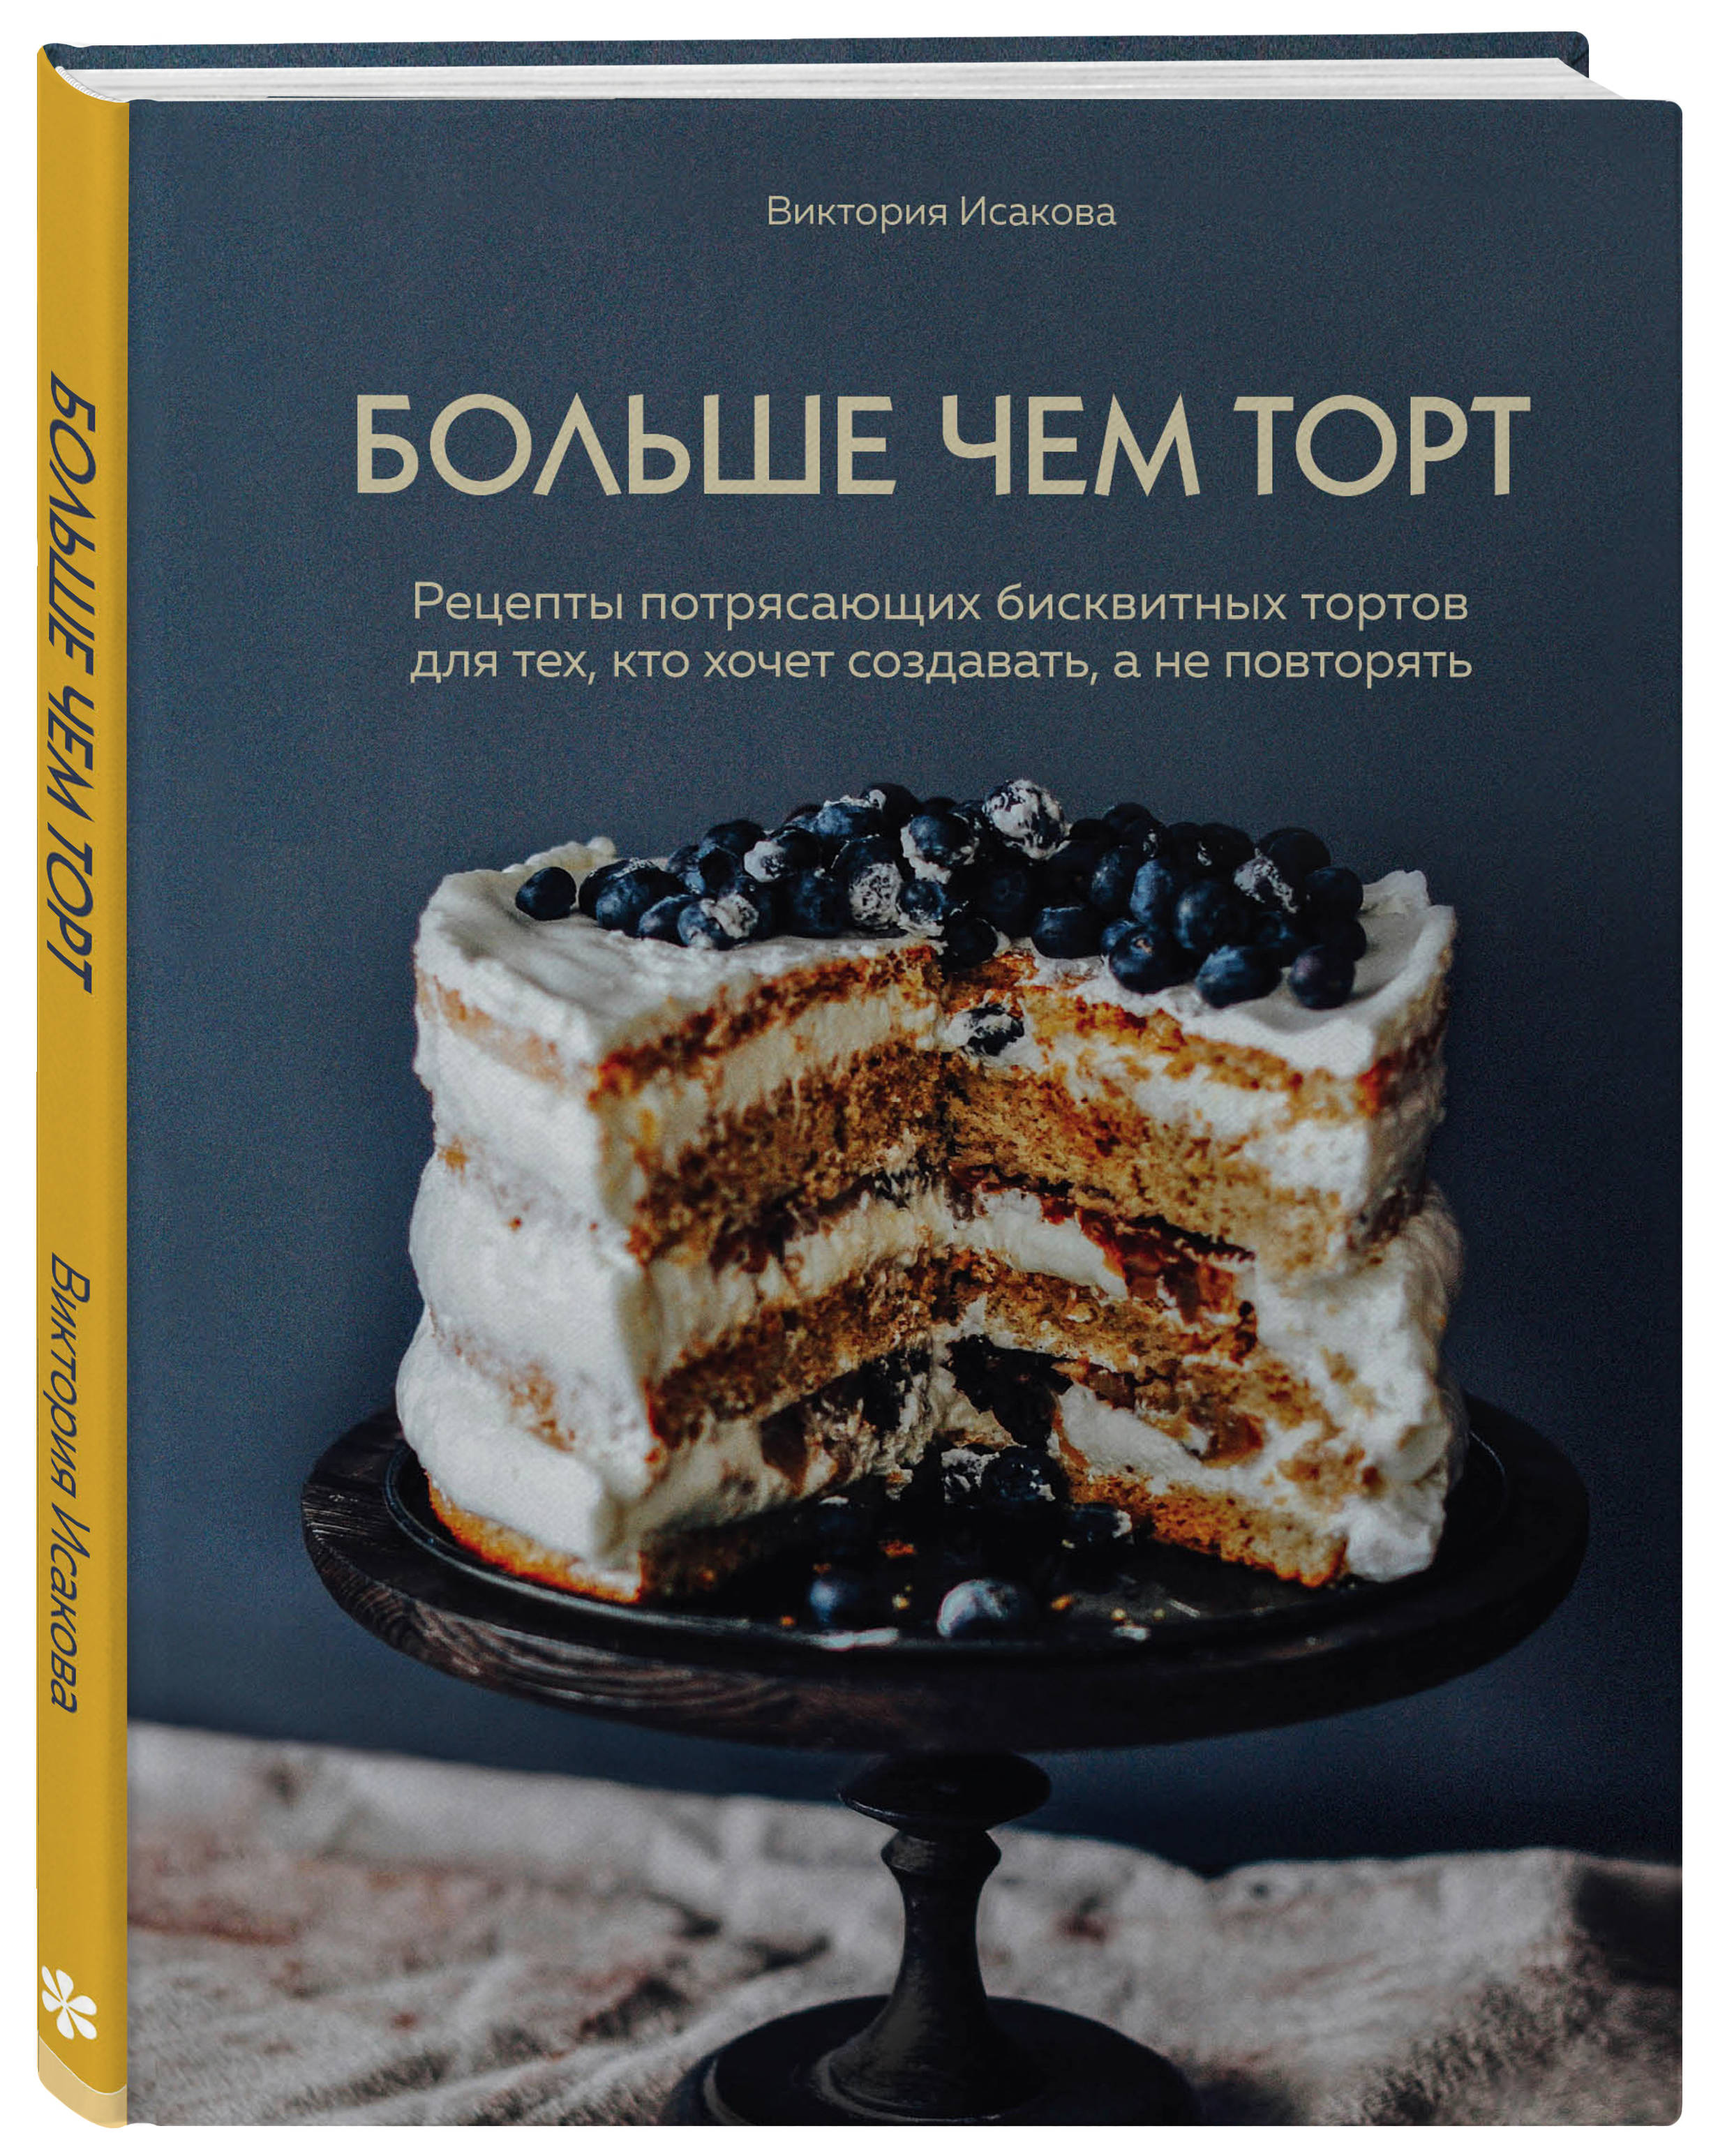 Виктория Исакова Больше чем торт: Рецепты потрясающих бисквитных тортов для тех, кто хочет создавать, а не повторять